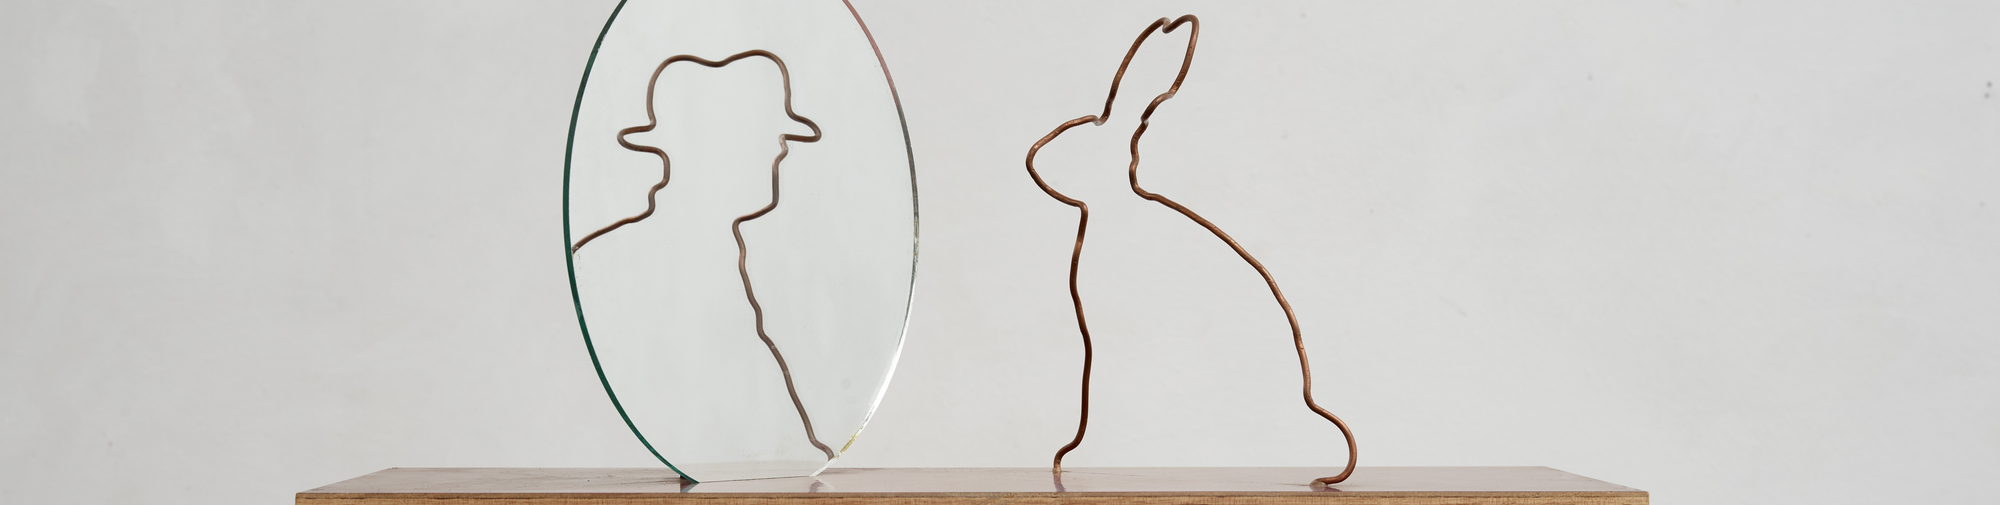 Markus Raetz Miroir de lièvre, 1988 Fil de cuivre, miroir rond, contreplaqué, enduit Succession Markus Raetz Photo : SIK-ISEA, Zurich (Alexander Jaquemet) © 2023, ProLitteris, Zurich